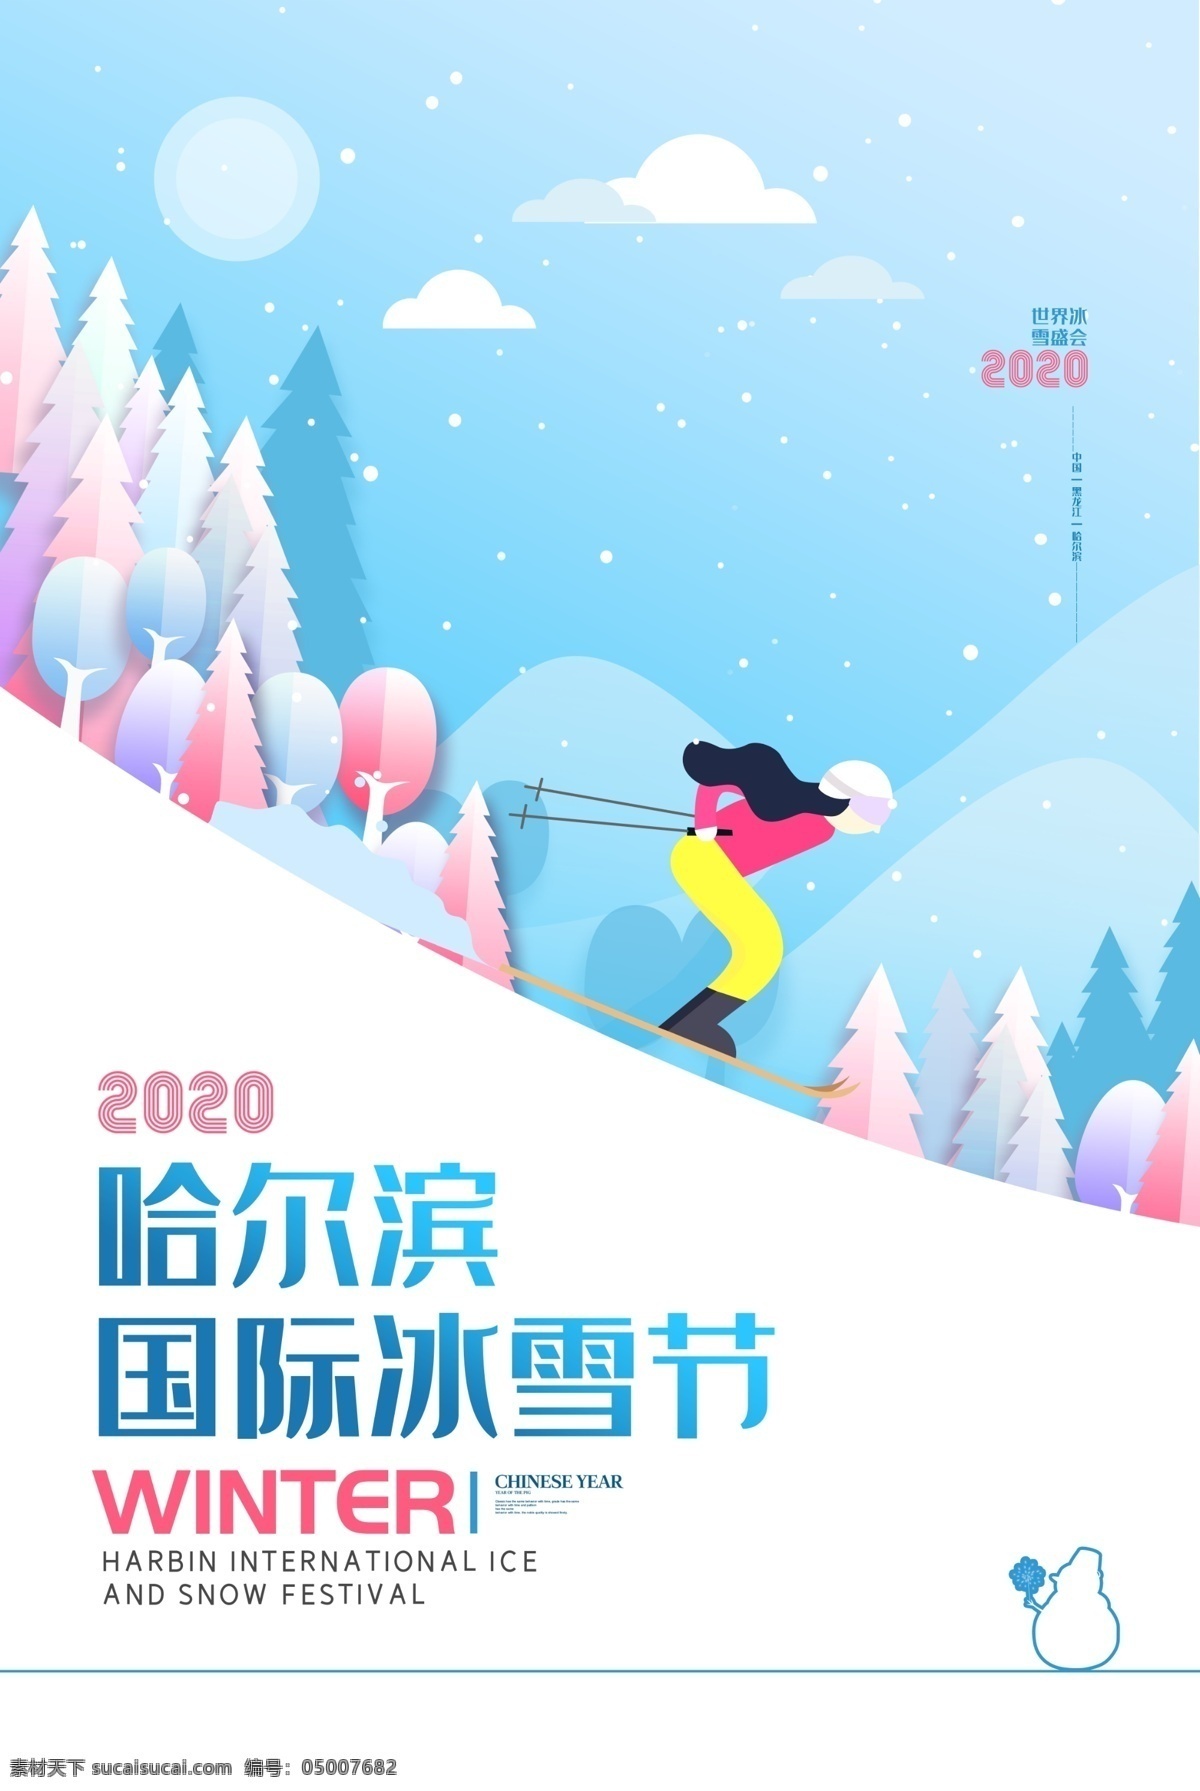 哈尔滨 国际 冰雪节 广告 海报 冰雪节海报 冰雪节设计 手绘冰雪节